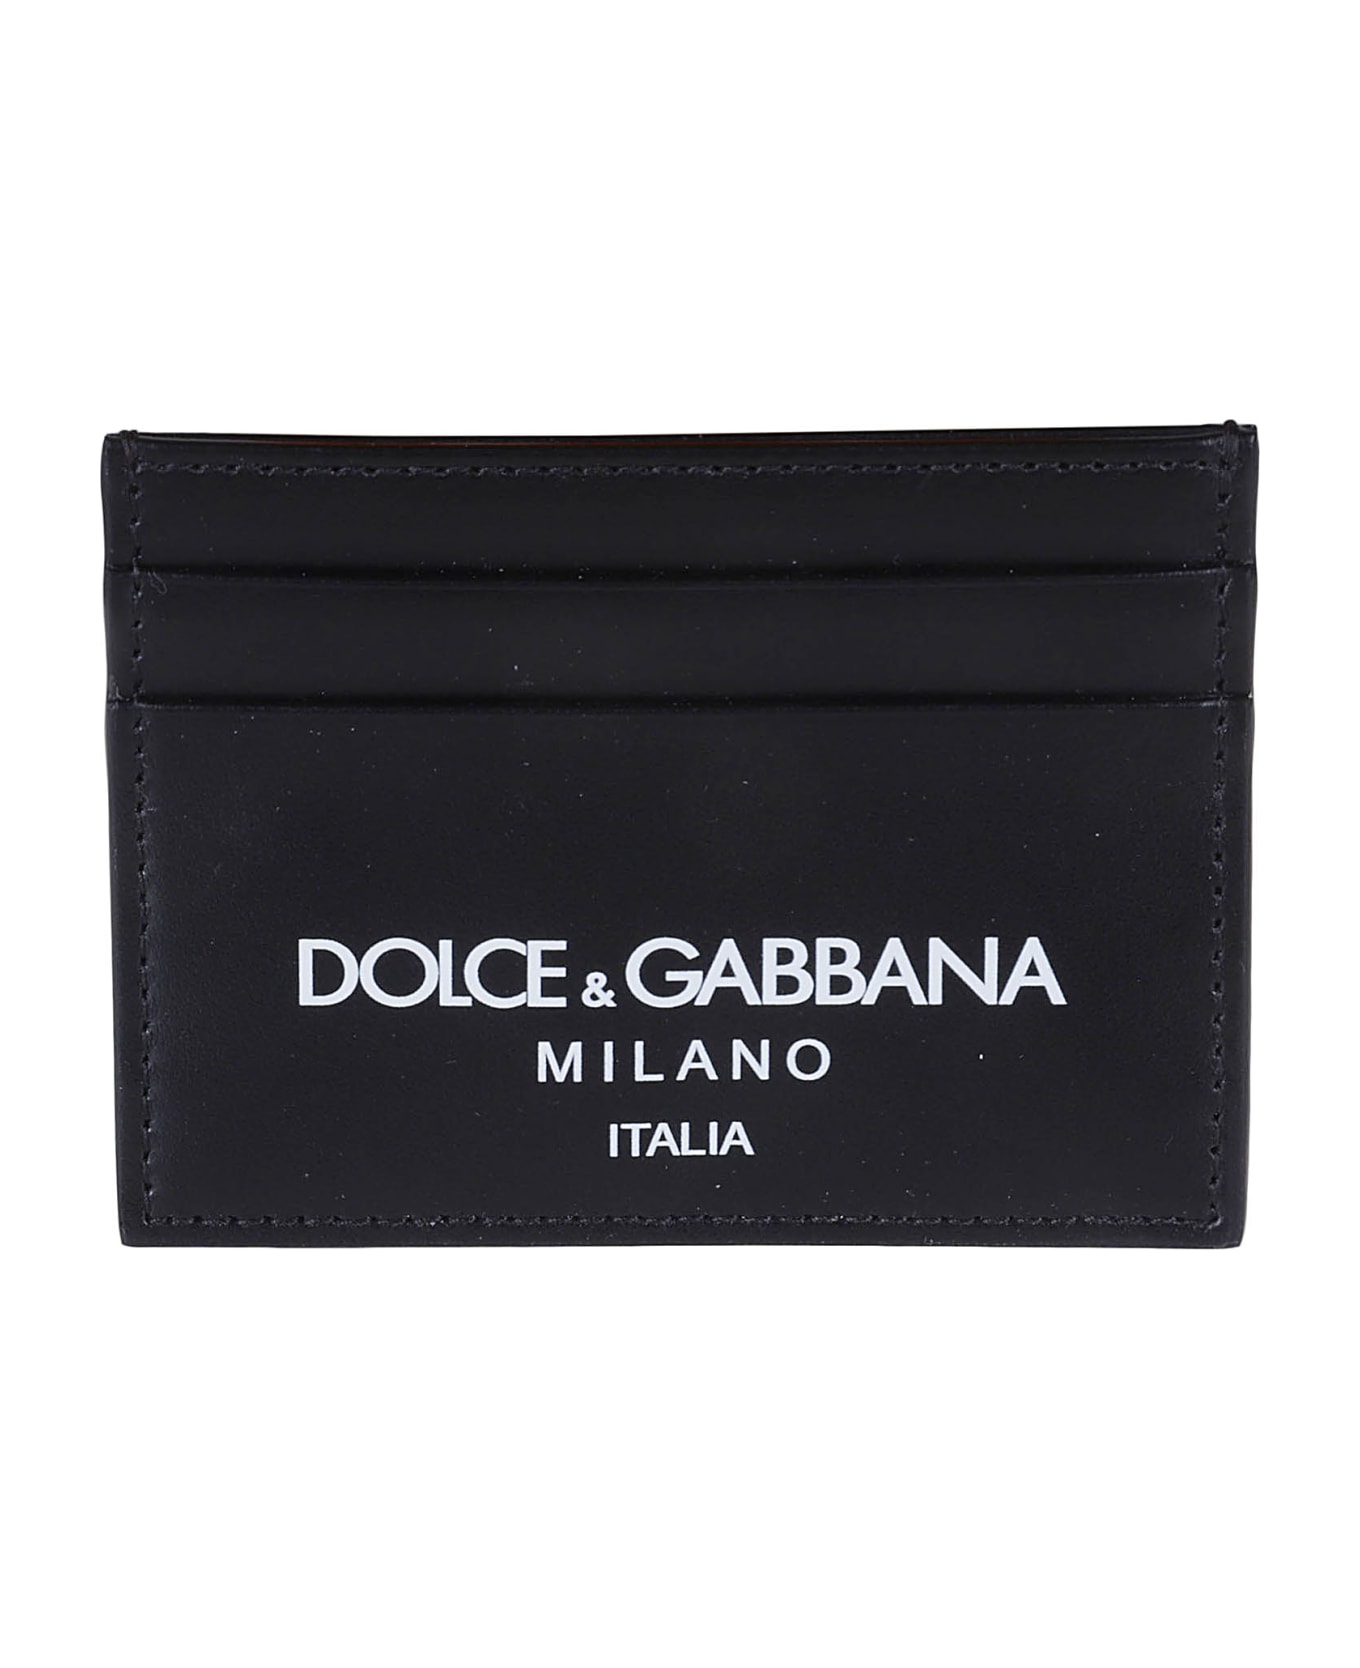 Dolce & Gabbana Milano Logo Card Holder - Black